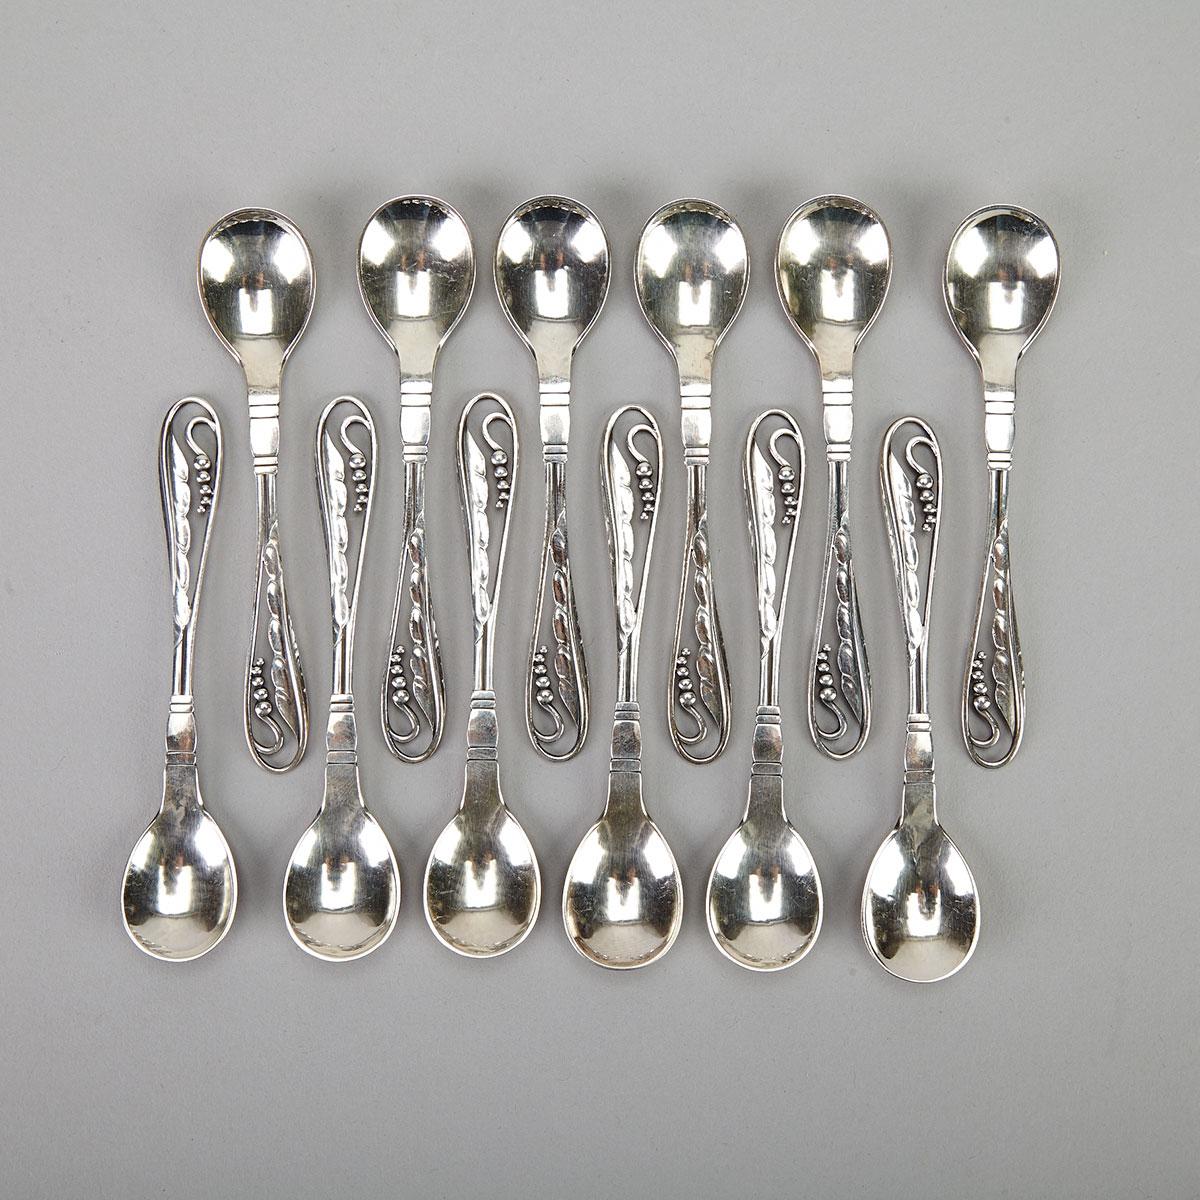 Twelve Danish Silver Coffee Spoons, #42, Georg Jensen, Copenhagen, c.1933-44